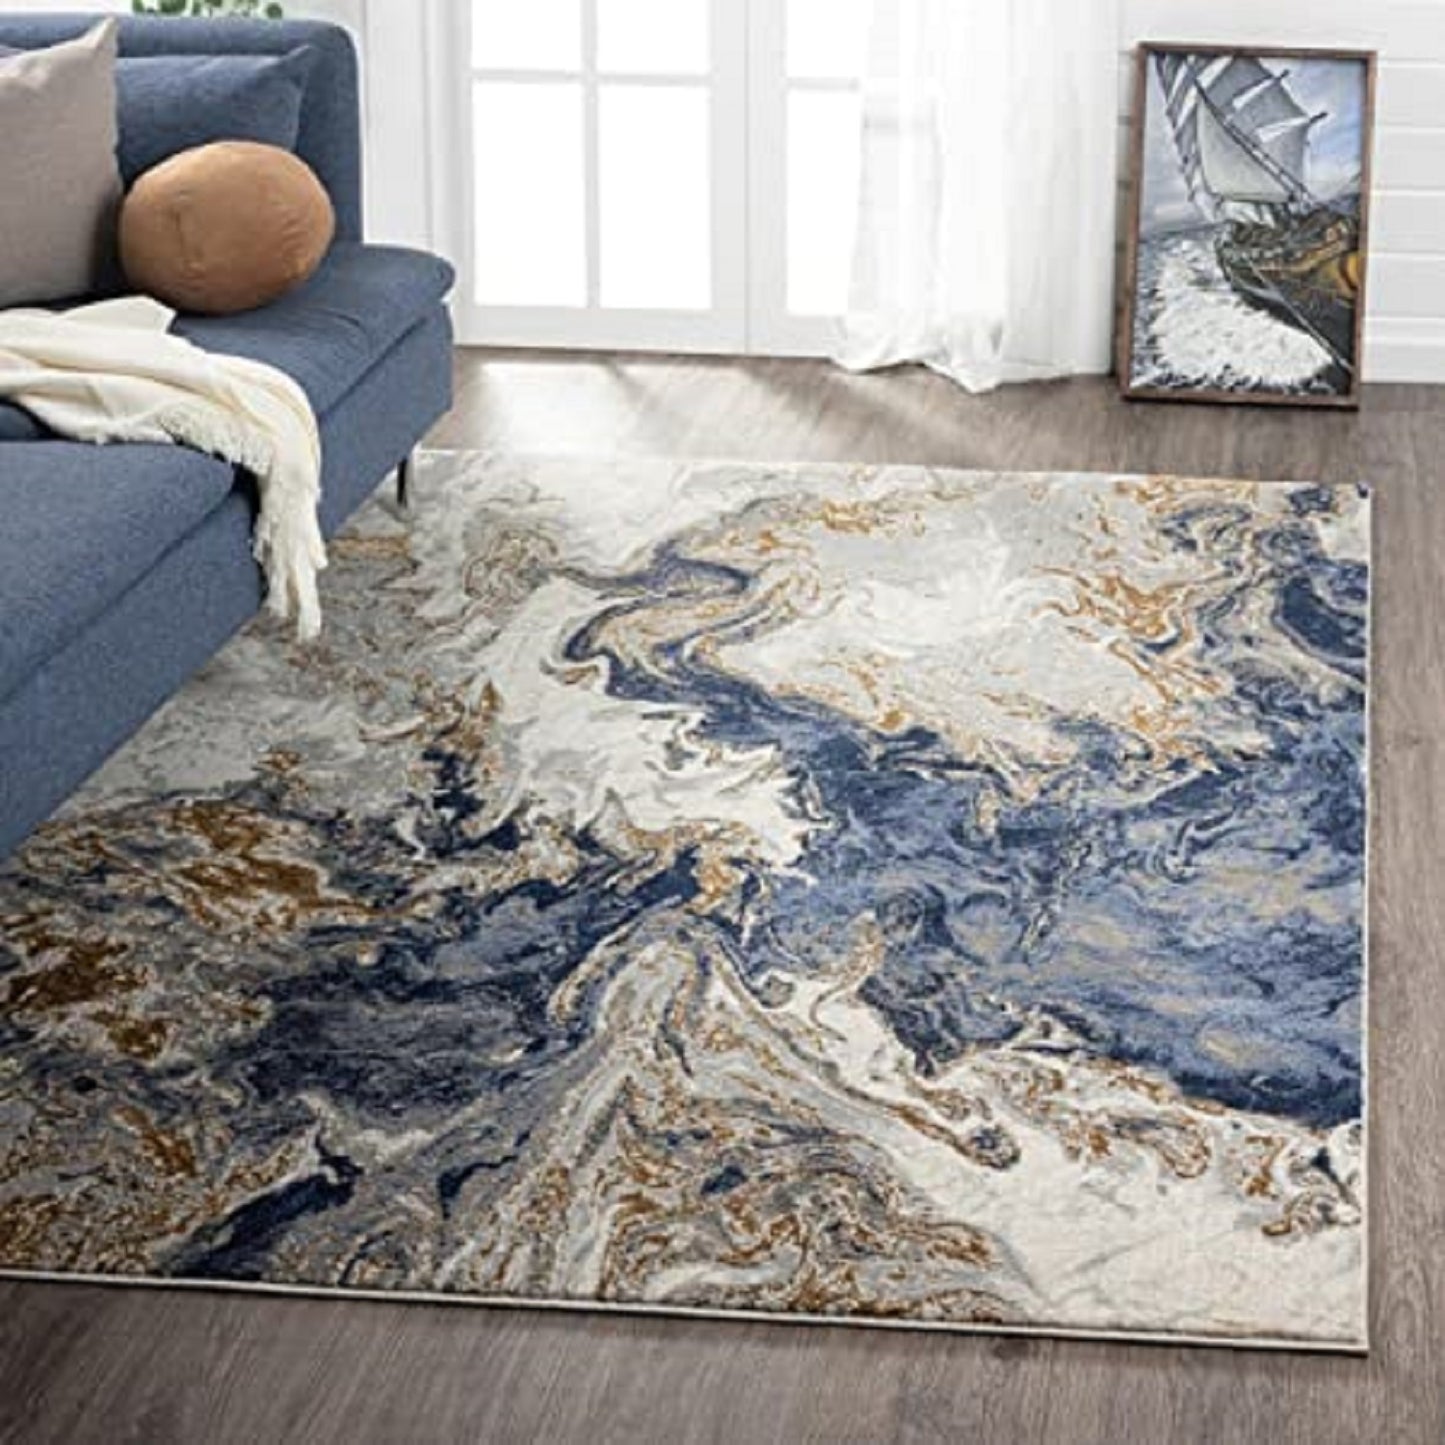 Ishro Home Premium Anti-Skid Carpets